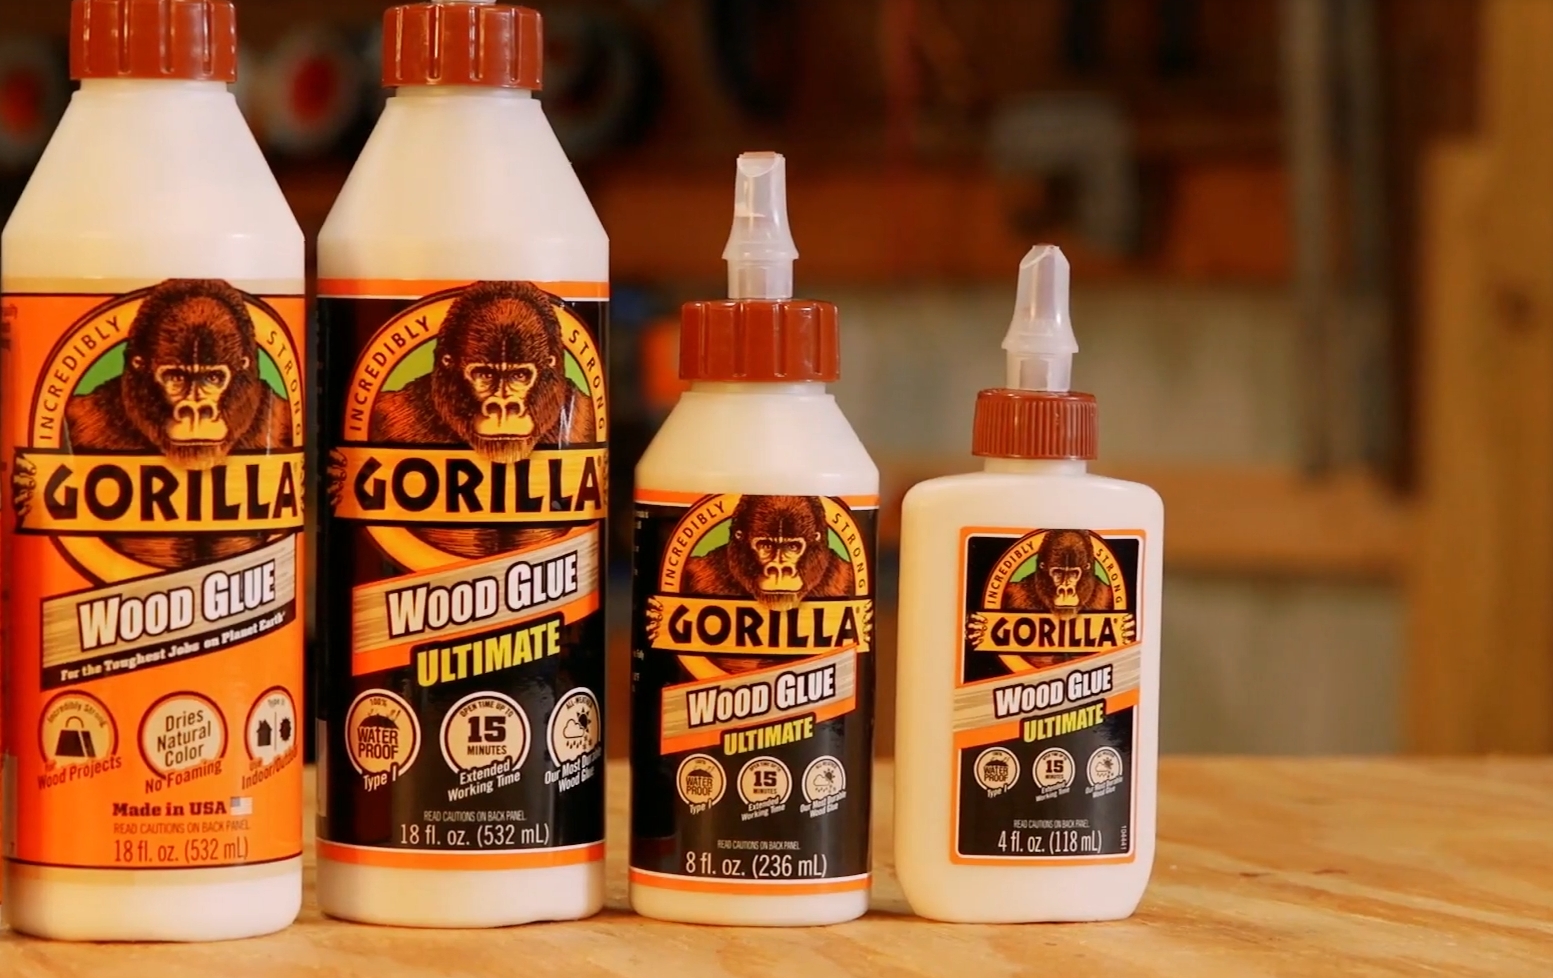 How do You Soften or Unharden Gorilla Wood Glue